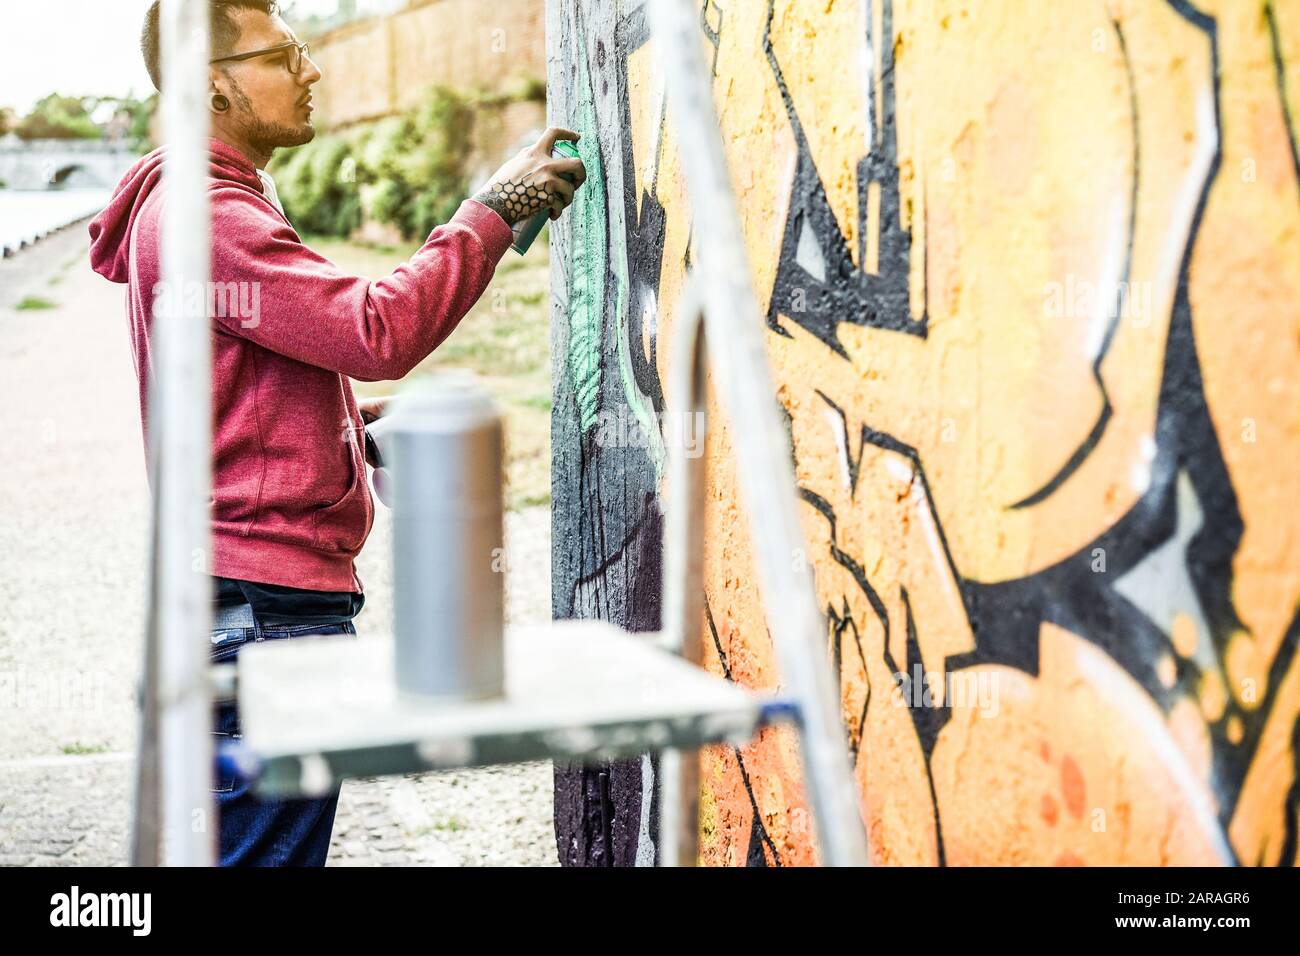 Tätowier-Graffiti-Schriftstellergemälde mit Farbspray an der Wand - Zeitgenössischer Künstler bei der Arbeit - urbaner Lebensstil, Street-Art-Konzept - Fokus auf sein Gesicht an Stockfoto